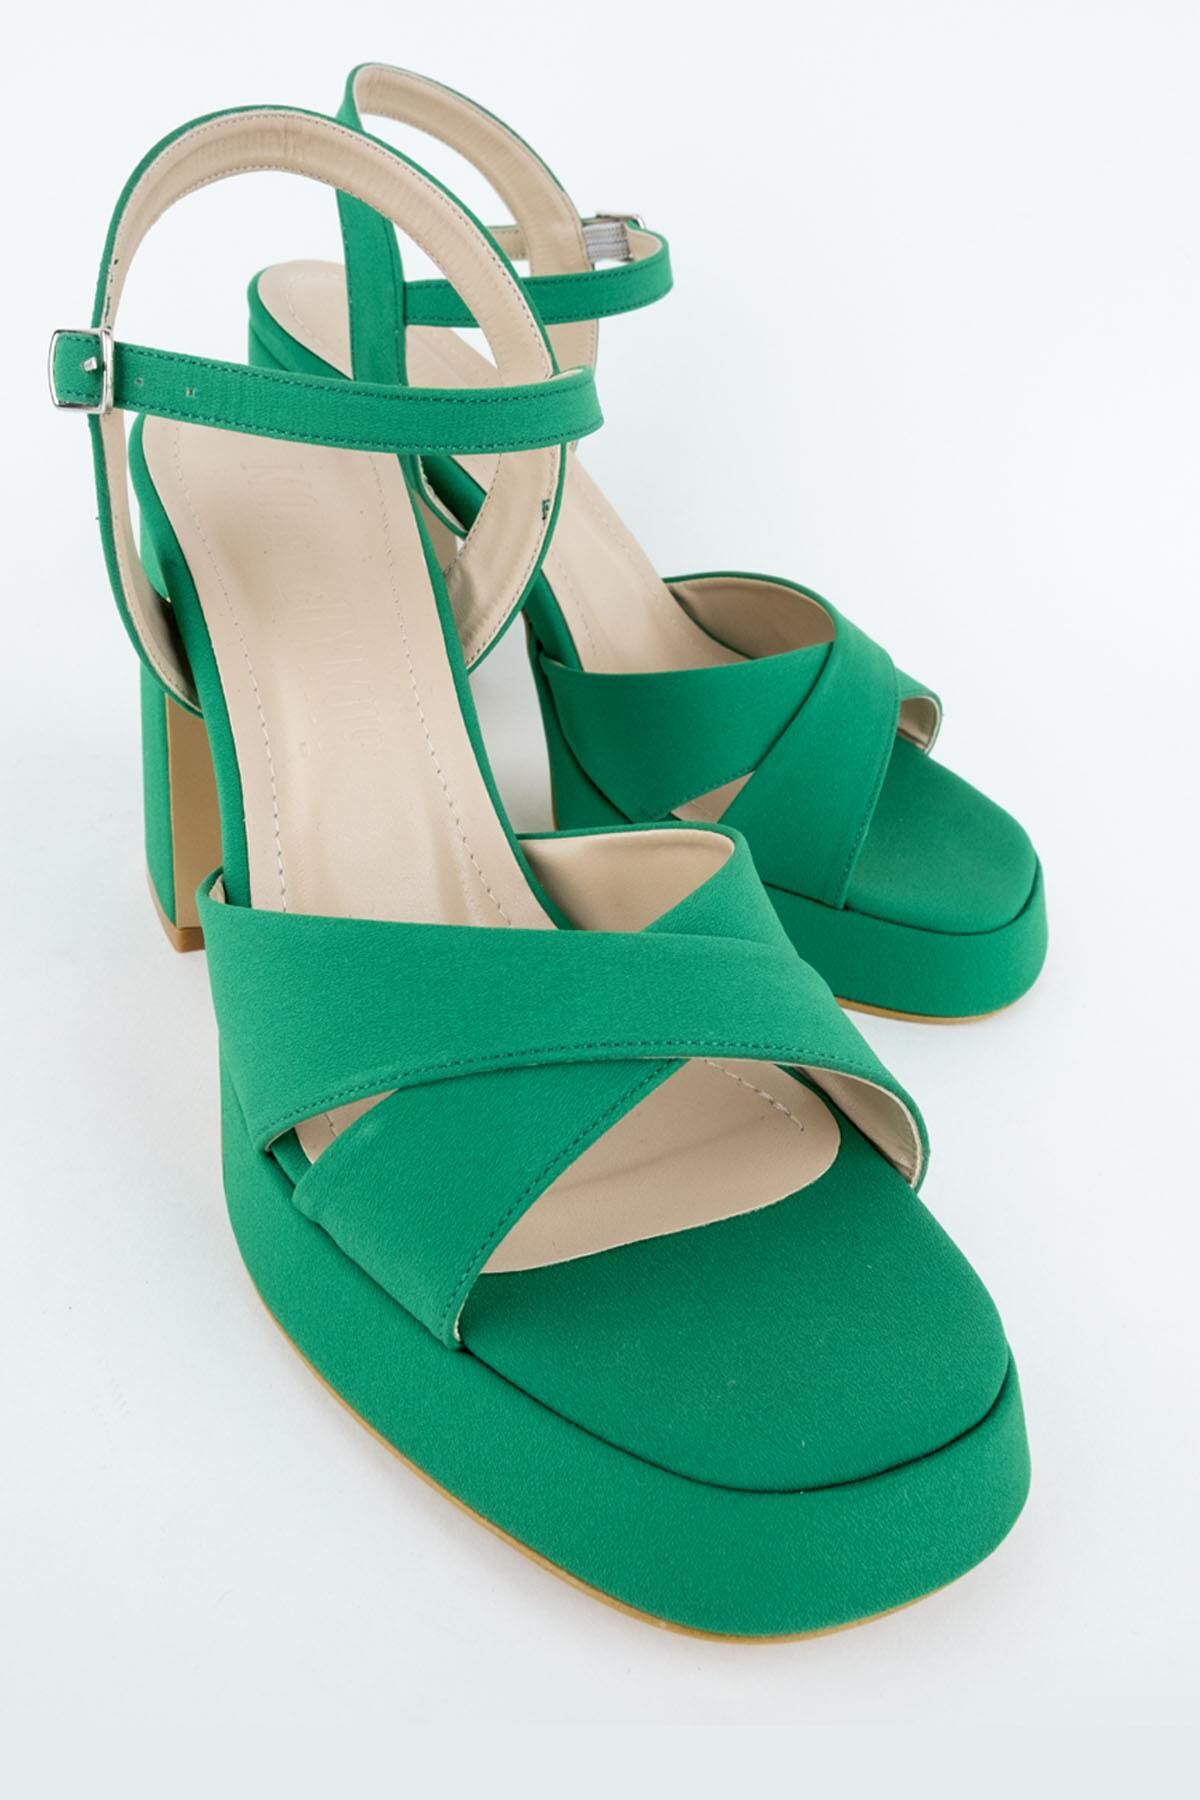 Sahra Yeşil Saten Çapraz Bantlı Kalın Platform Topuklu Ayakkabı - 4